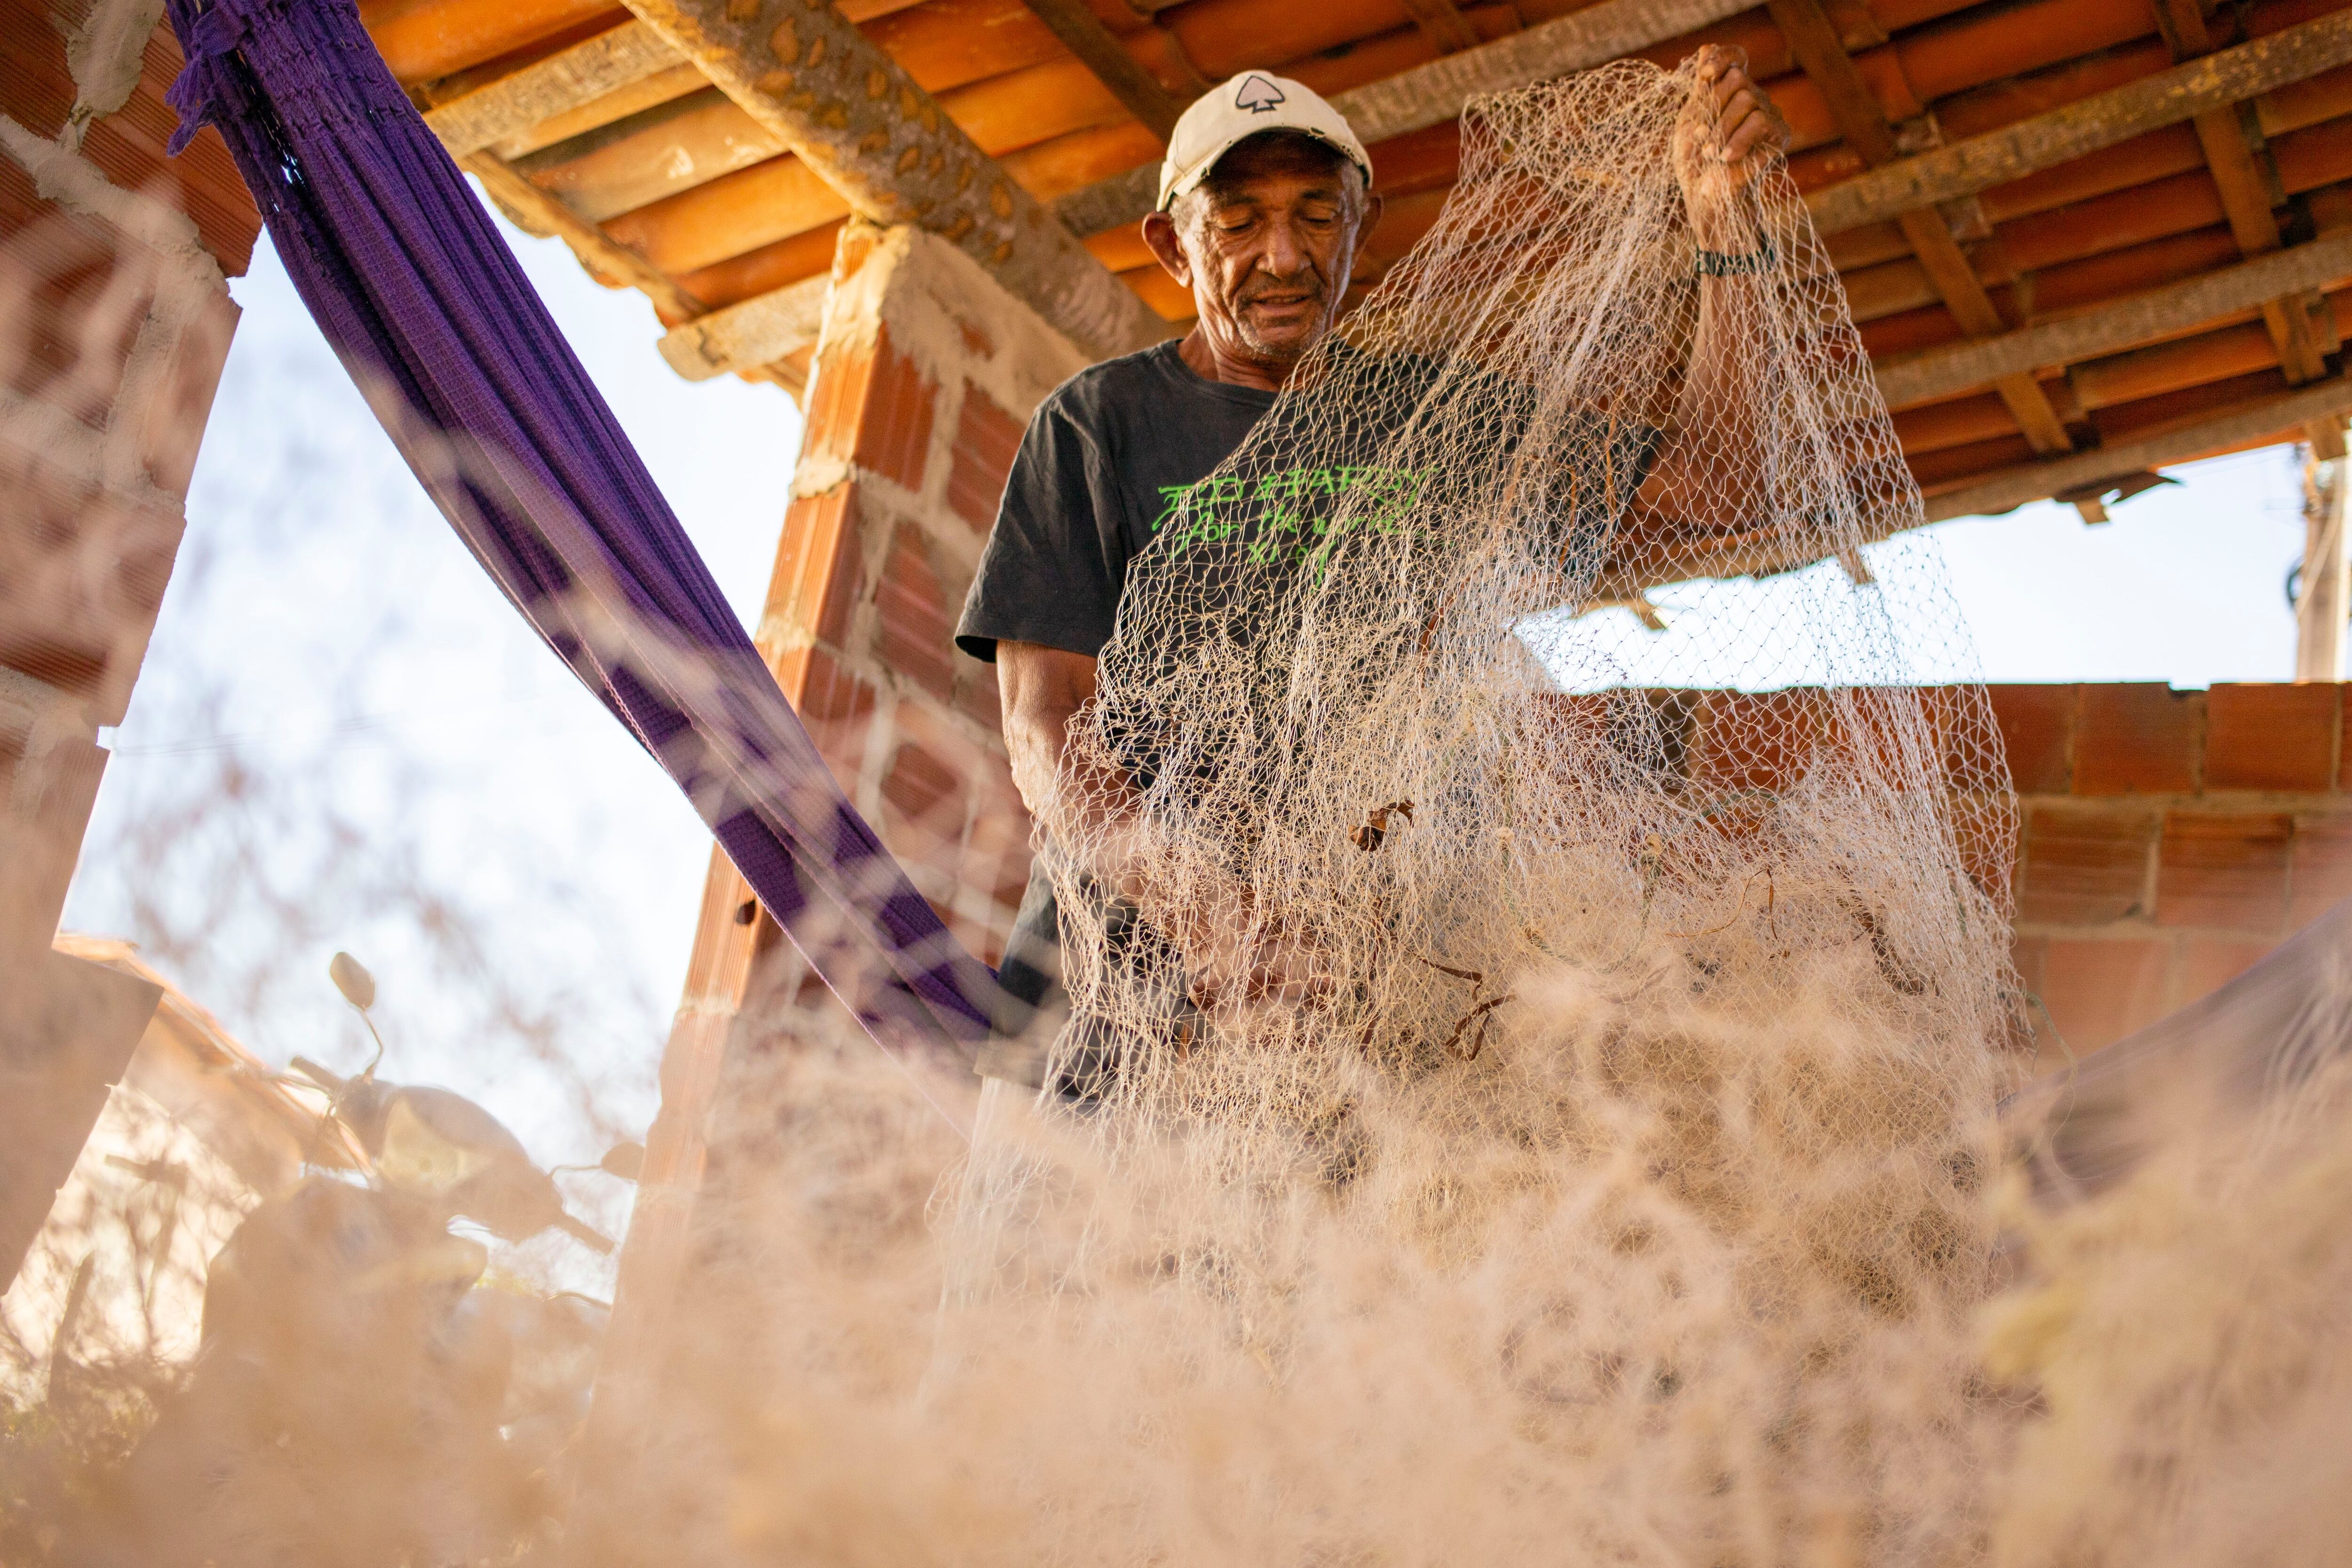 O pescador aposentado Antônio Ferreira de Oliveira, de 70 anos, organiza as redes de pesca em sua casa.